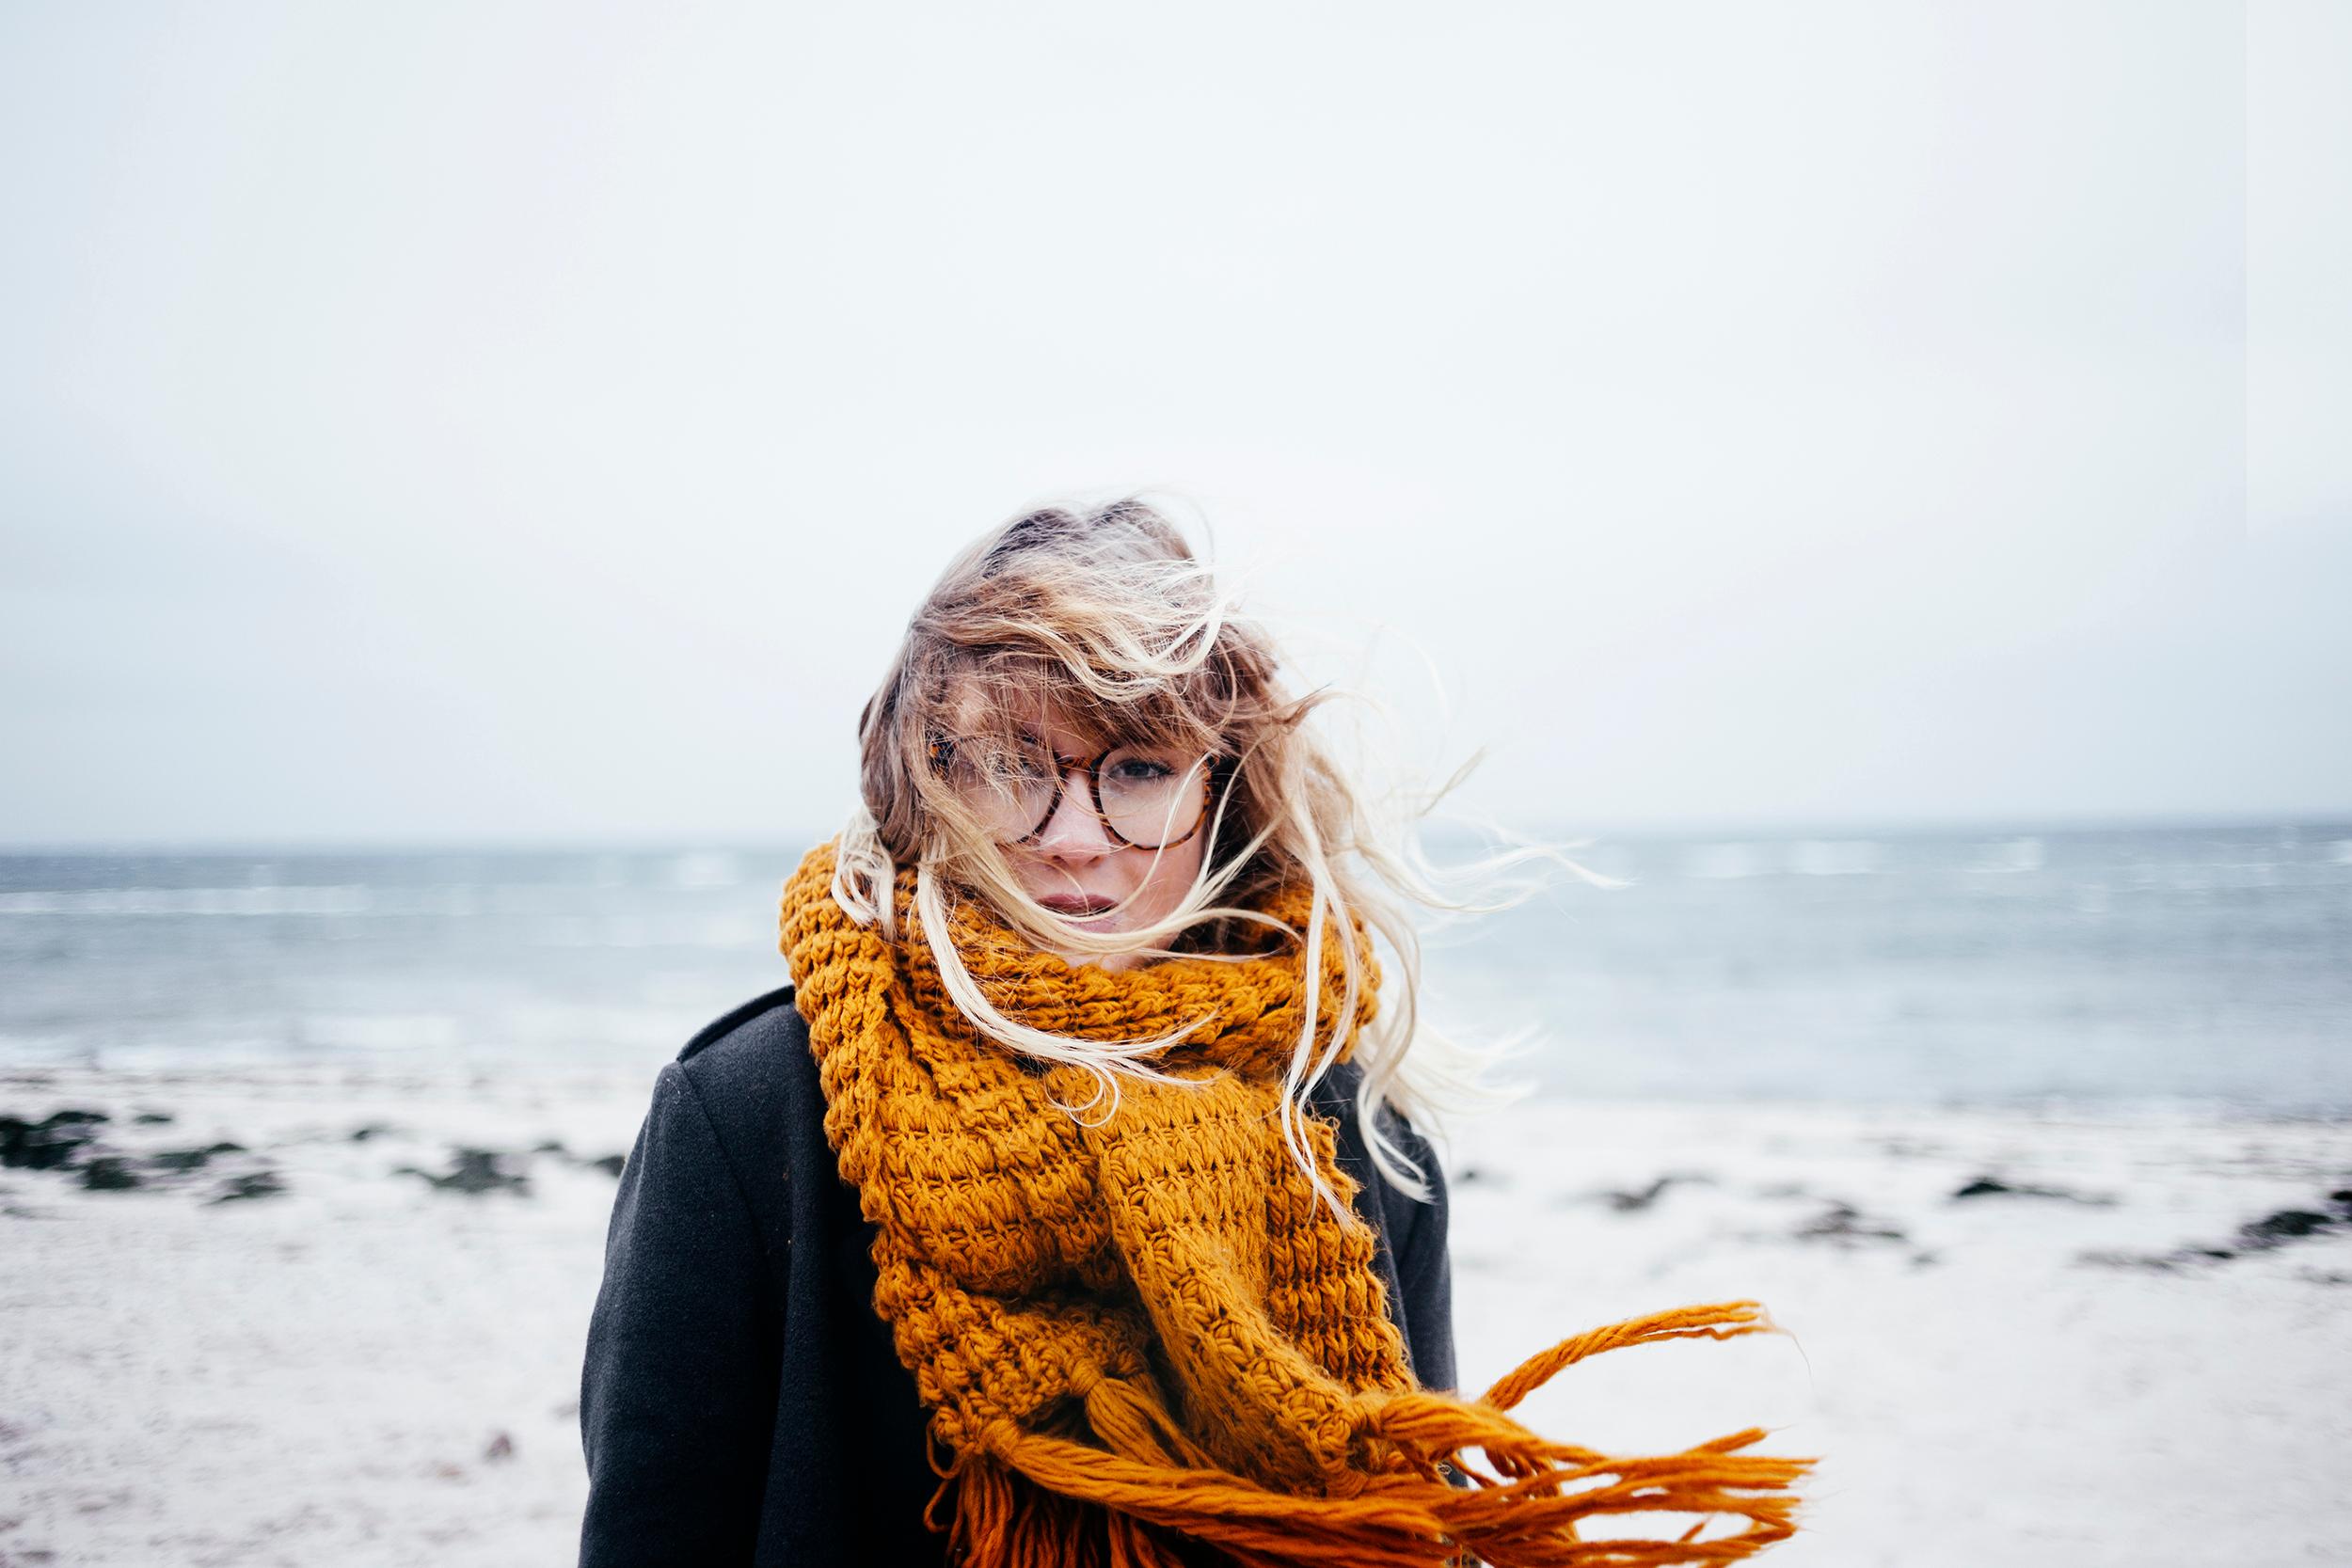 Nainen seisoo tuulisella rannalla syksyisessä säässä. Hänellä on musta takki, muhkea oranssi kaulaliina ja pyöreät silmälasit. Hiukset ja kaulaliina liikkuvat tuulen mukana.